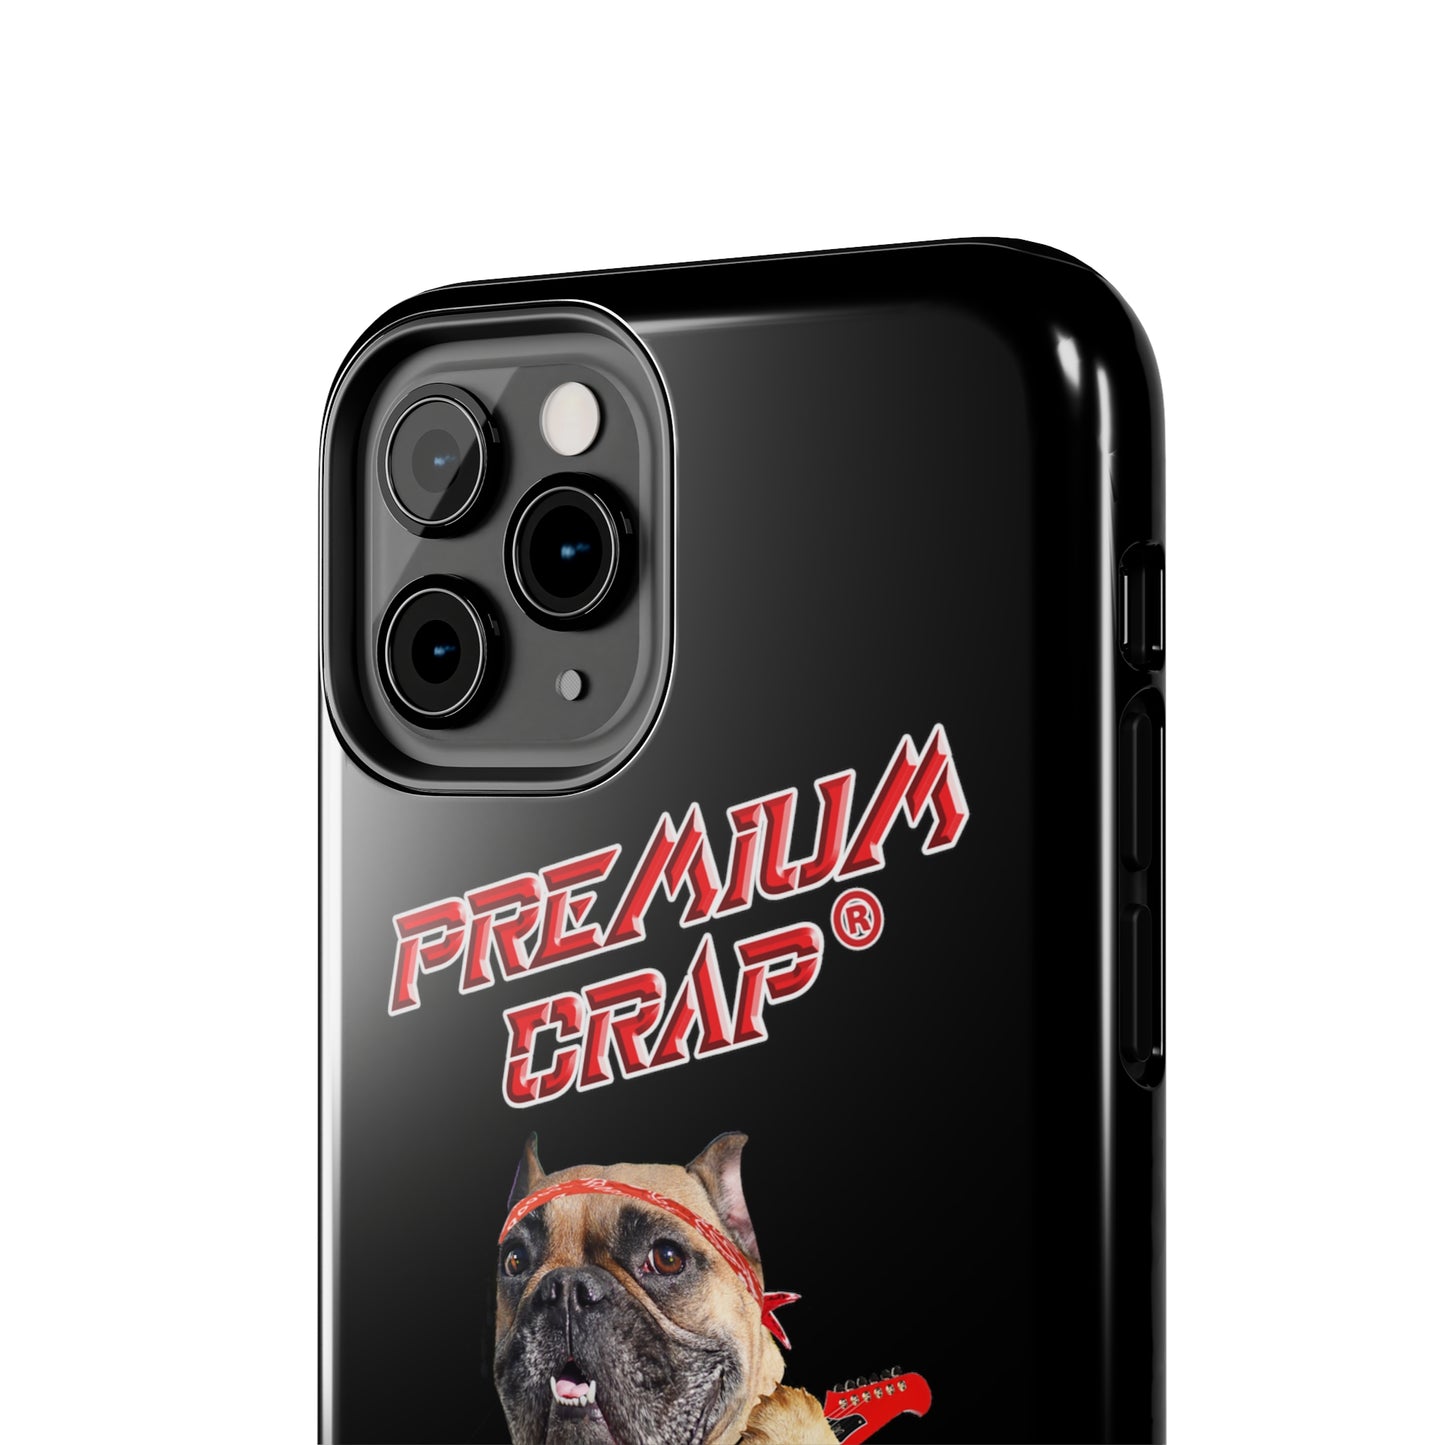 Premium Crap II Tough Phone Cases